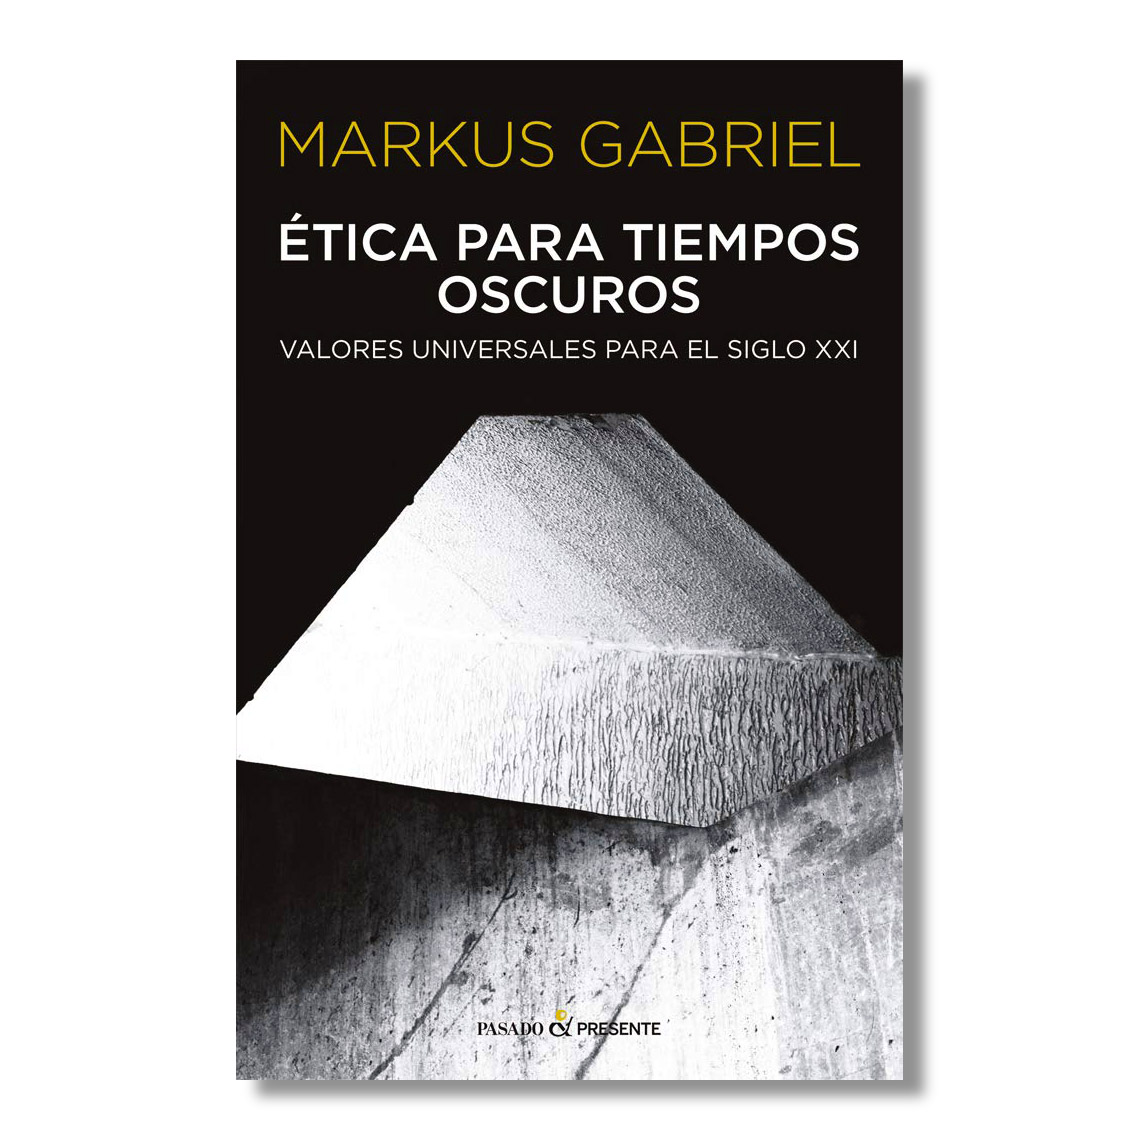 Markus-Gabriel_Etica-para-tiempos-oscuros-tapa_02